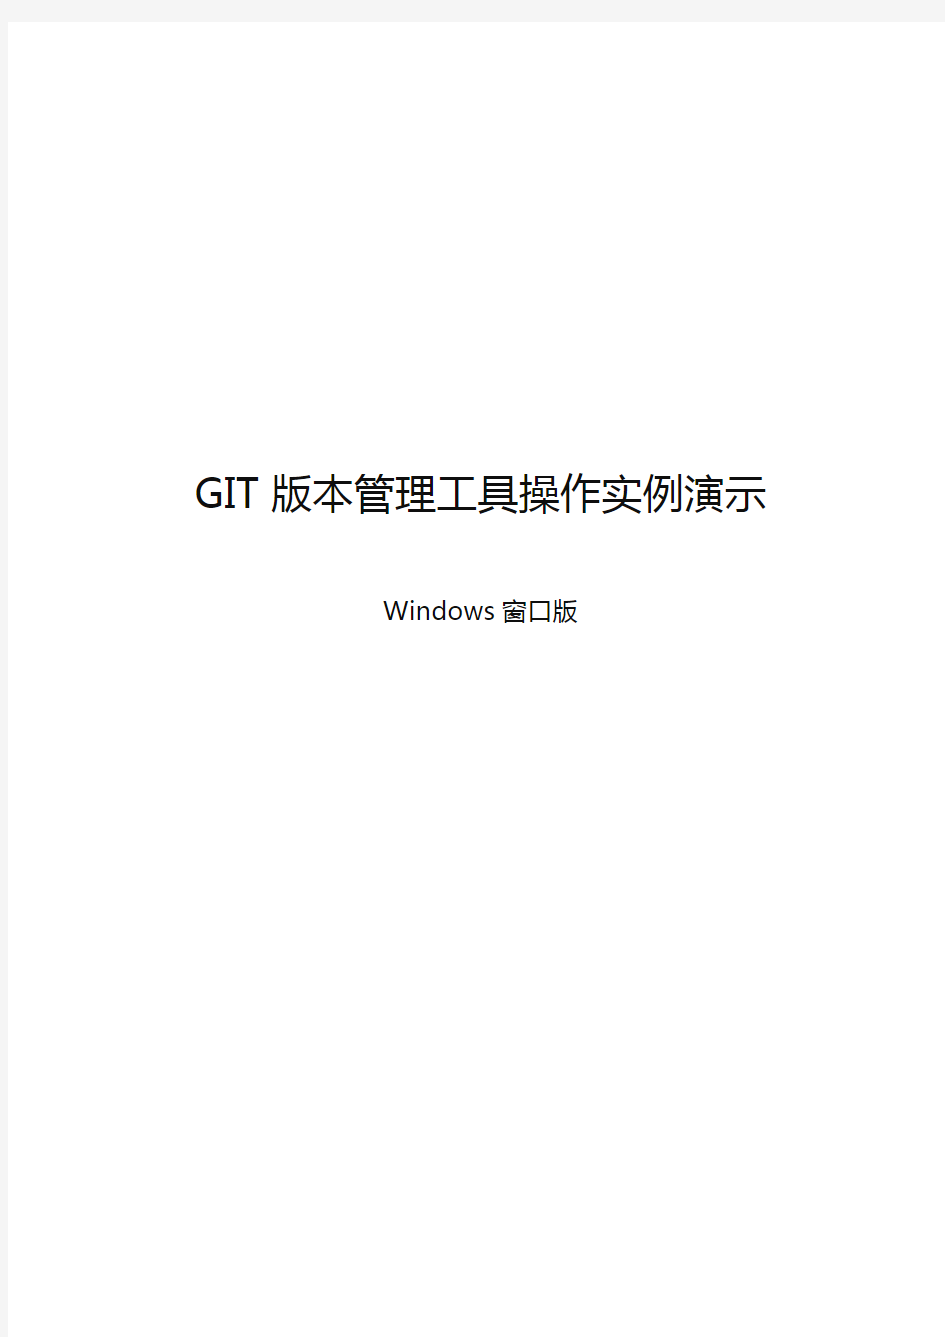 (企业管理工具)GIT版本管理工具操作实例演示